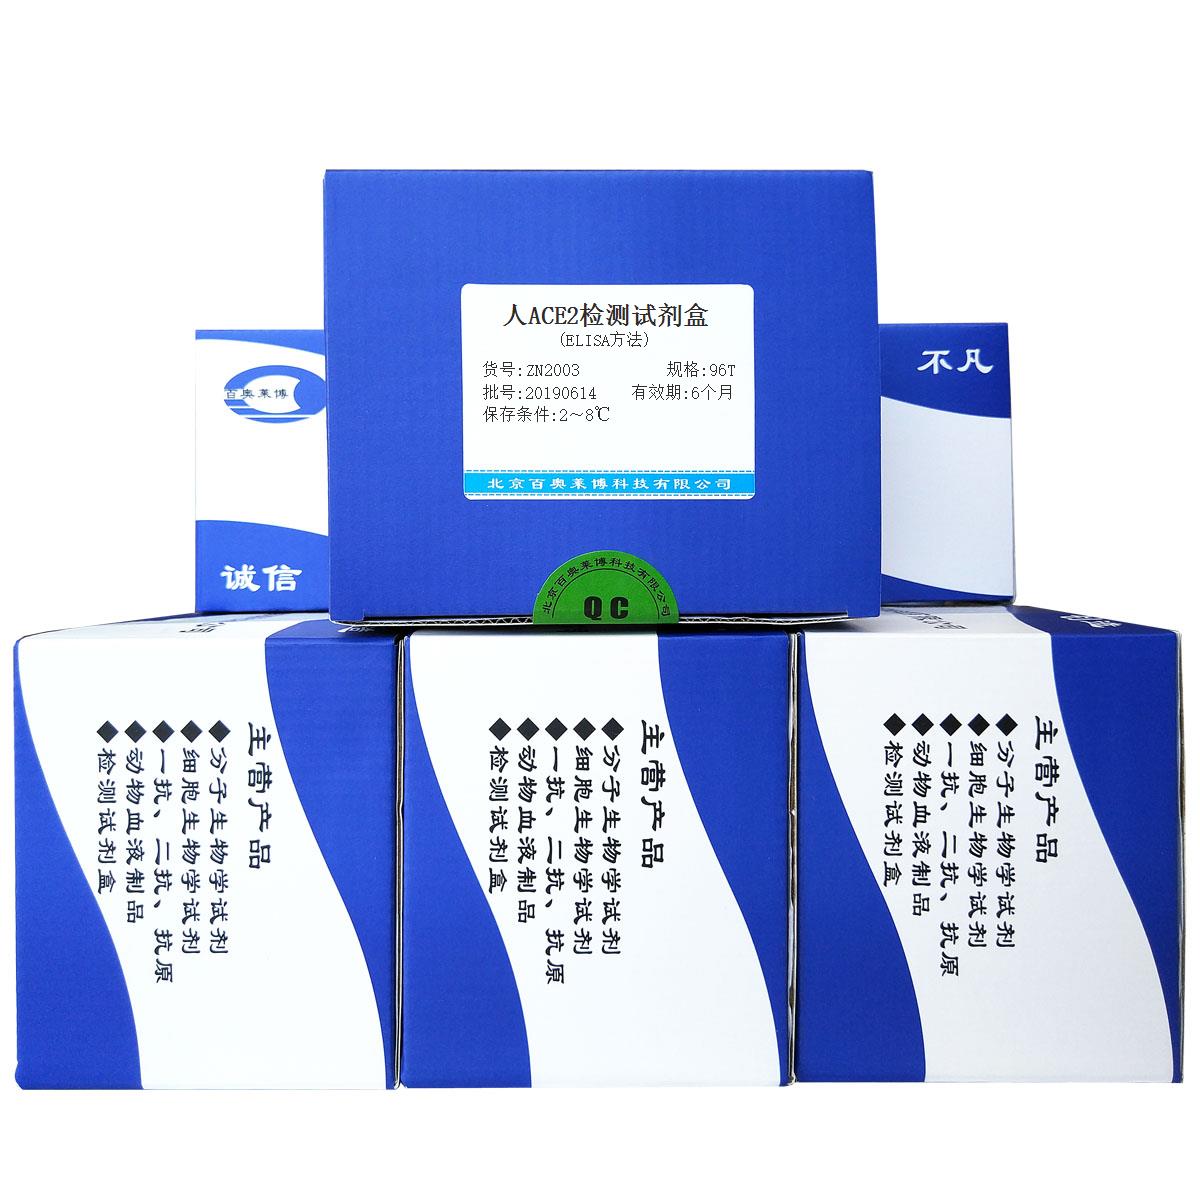 人ACE2检测试剂盒(ELISA方法)北京品牌